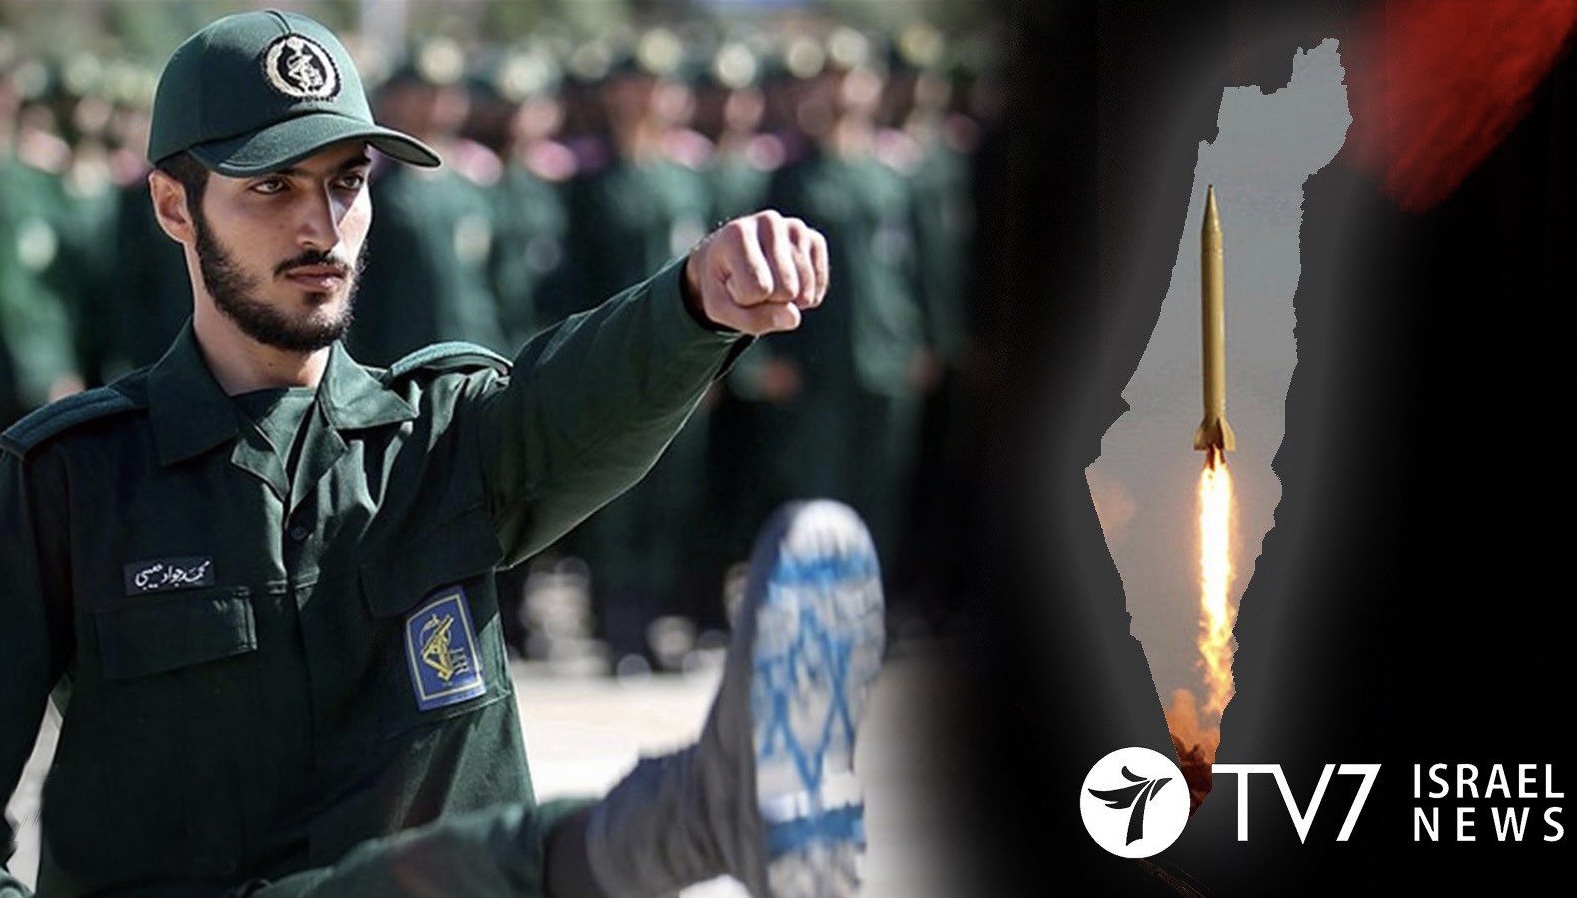 Iran Luncurkan Drone dan Rudal ke Israel, Korps Garda Revolusi Islam Iran Sebut Serangan "Operasi Janji Pasti"